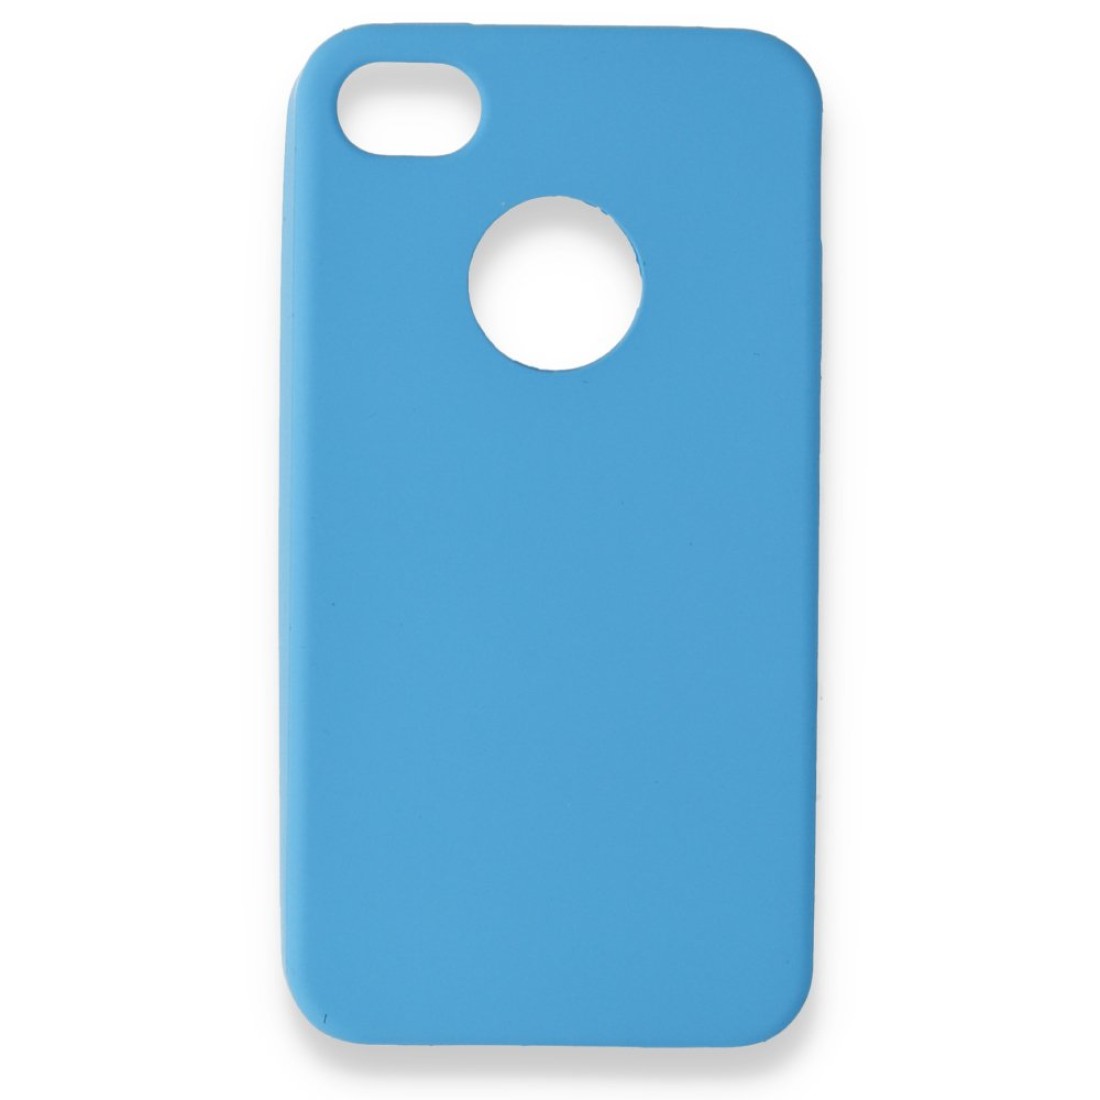 Apple iPhone 4 Kılıf Premium Rubber Silikon - Mavi